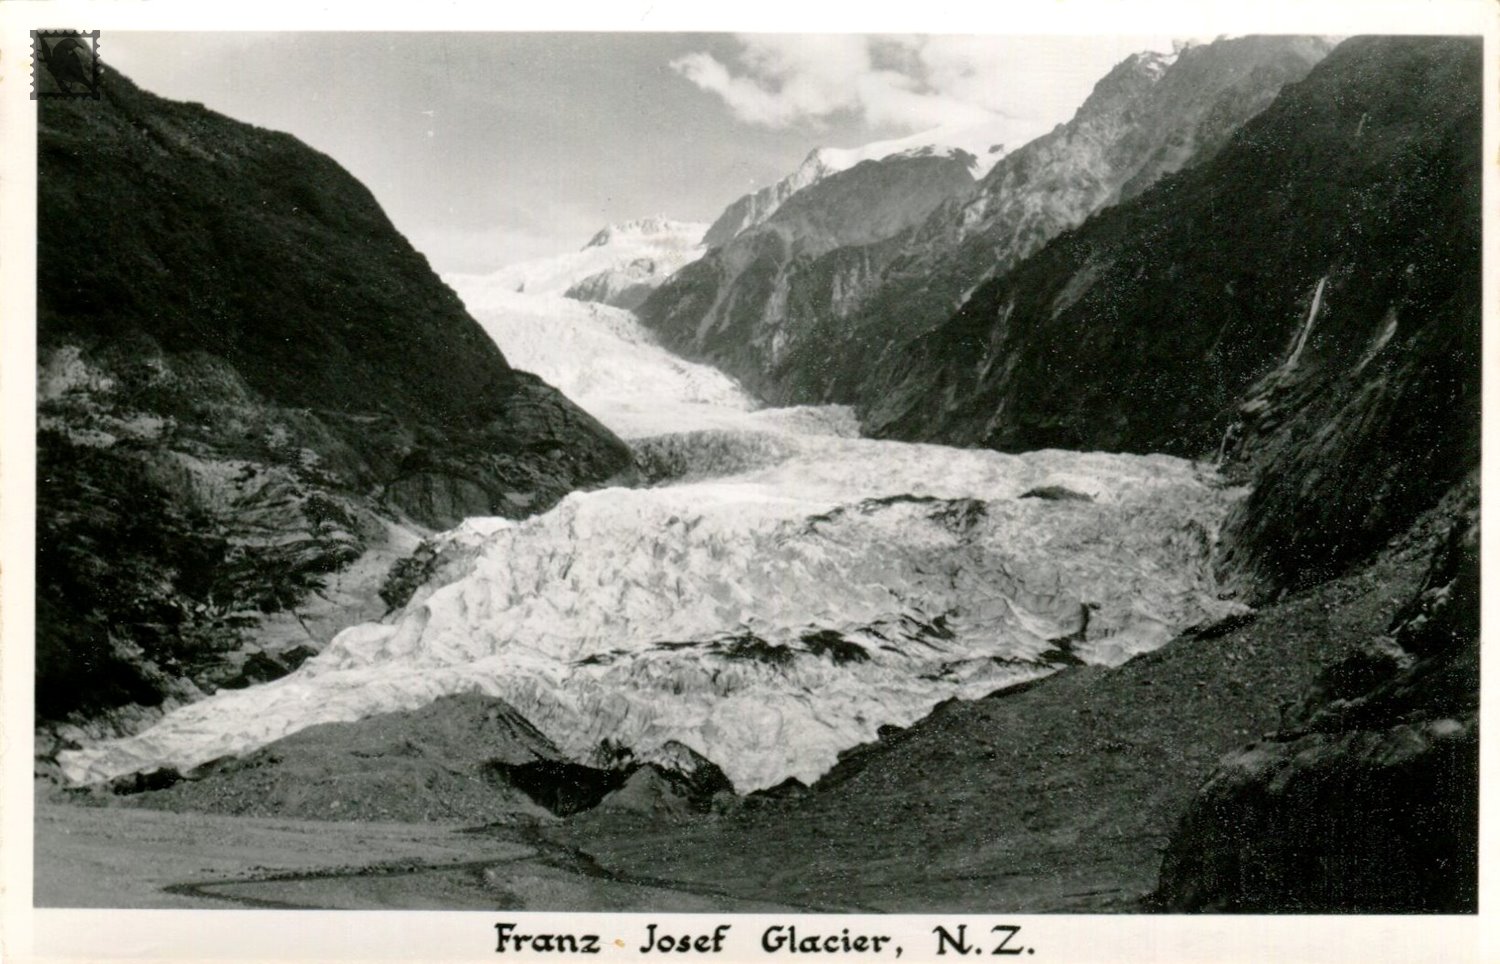 A close Up View of Franz Josef Glacier